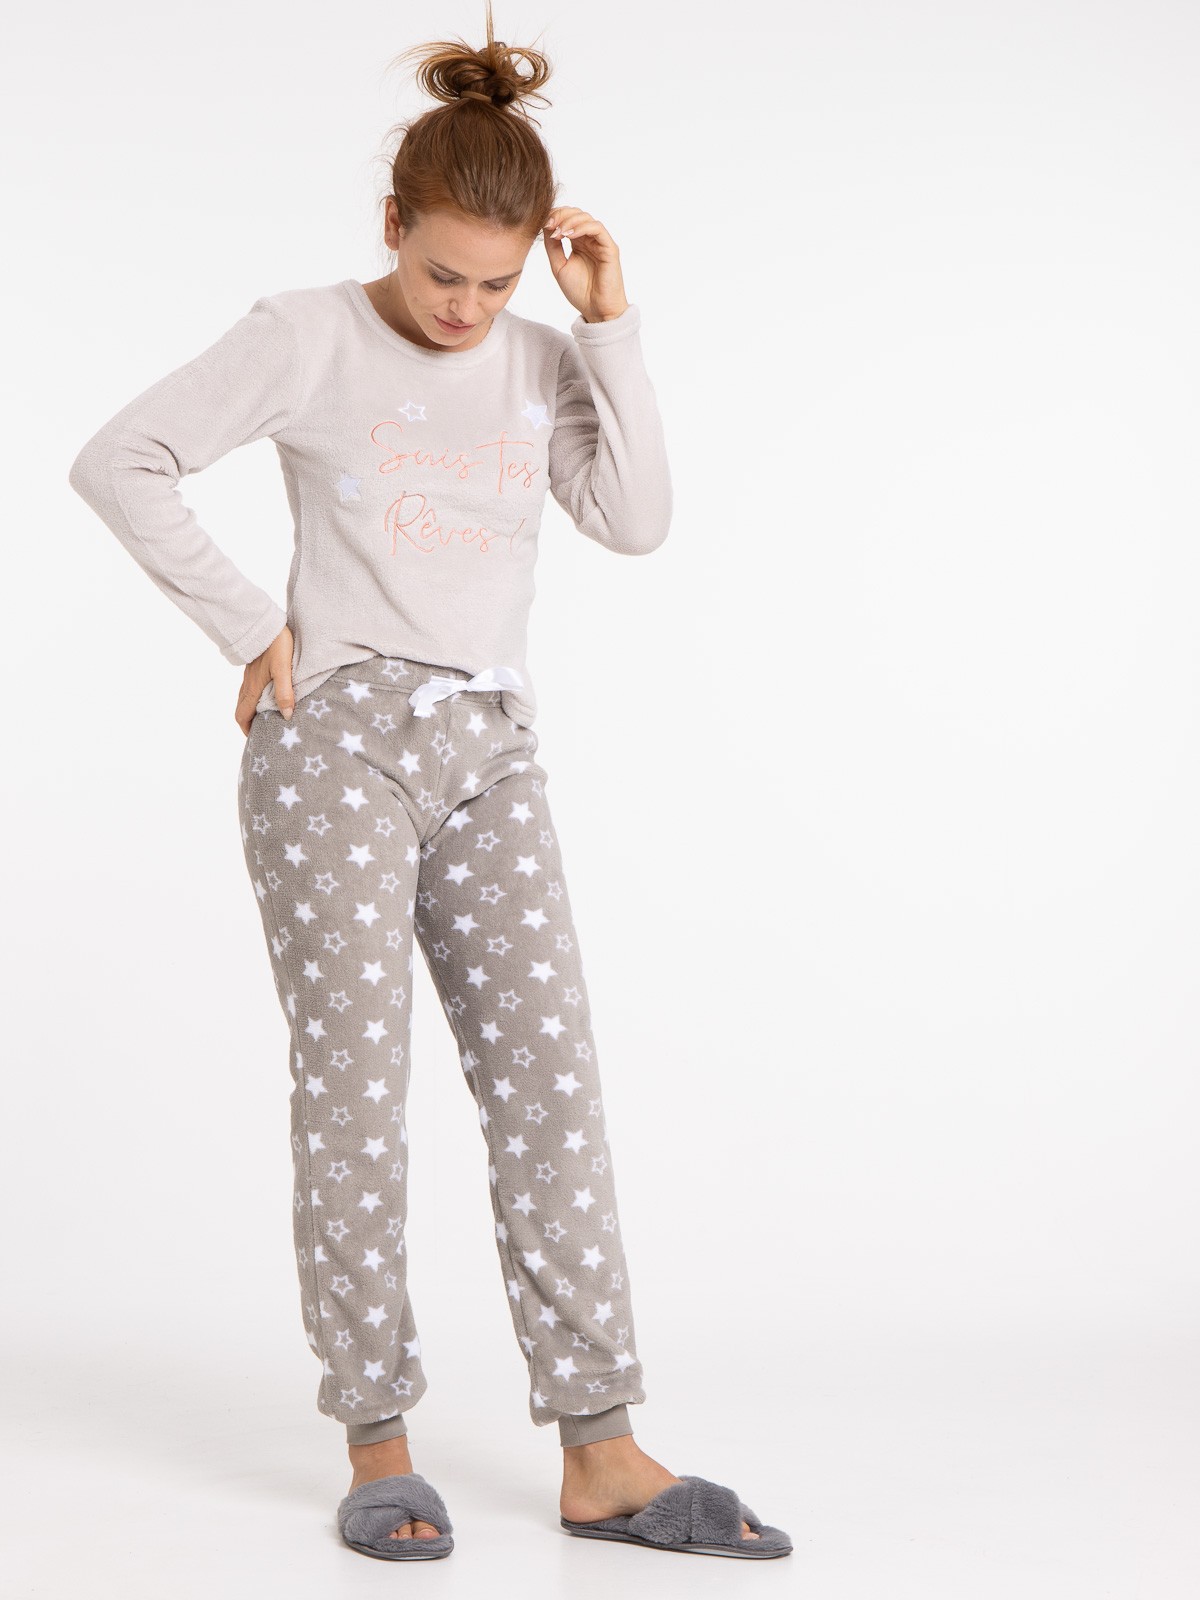 Pyjama motif et message polaire femme - DistriCenter